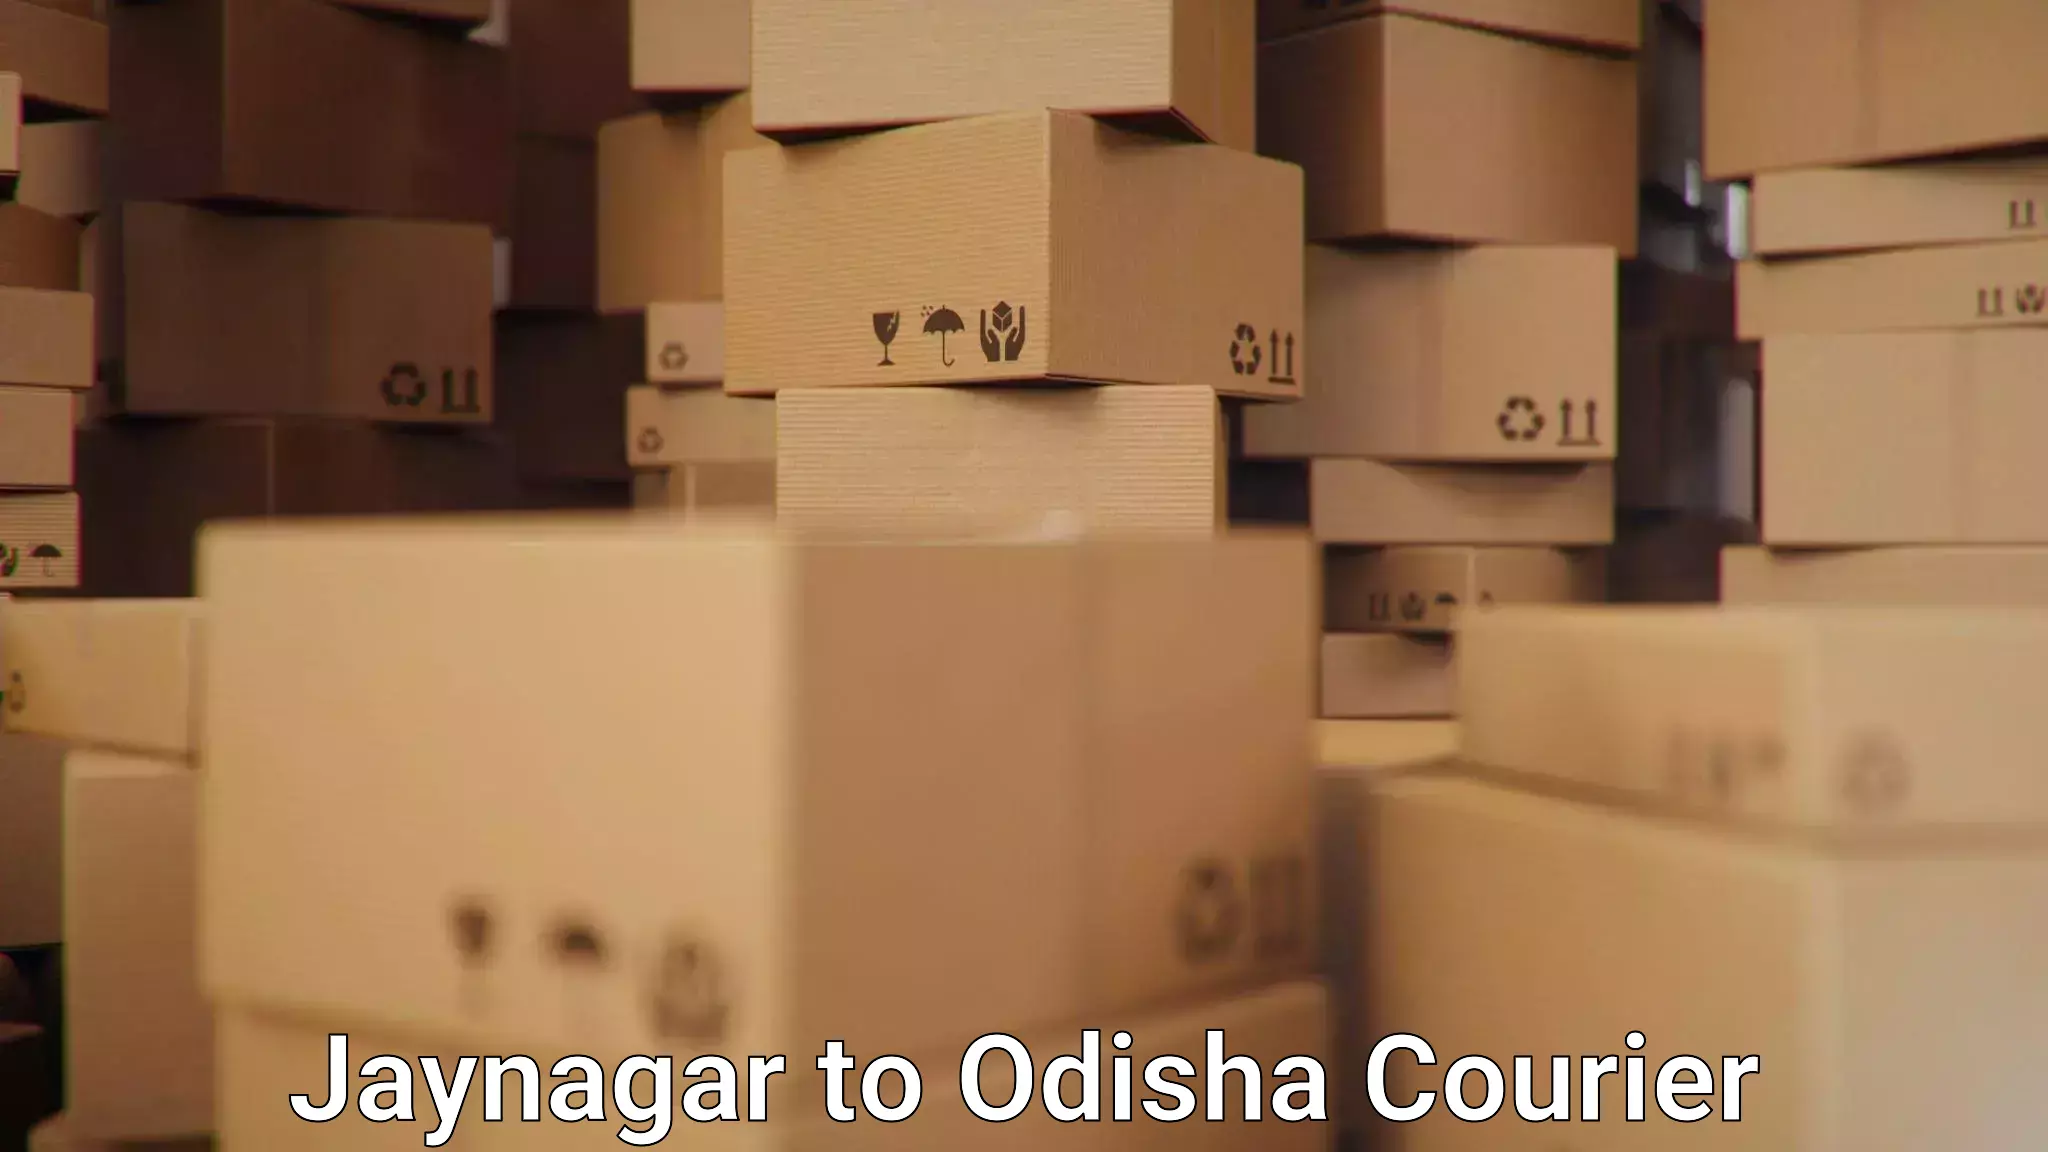 Professional courier handling Jaynagar to Duburi